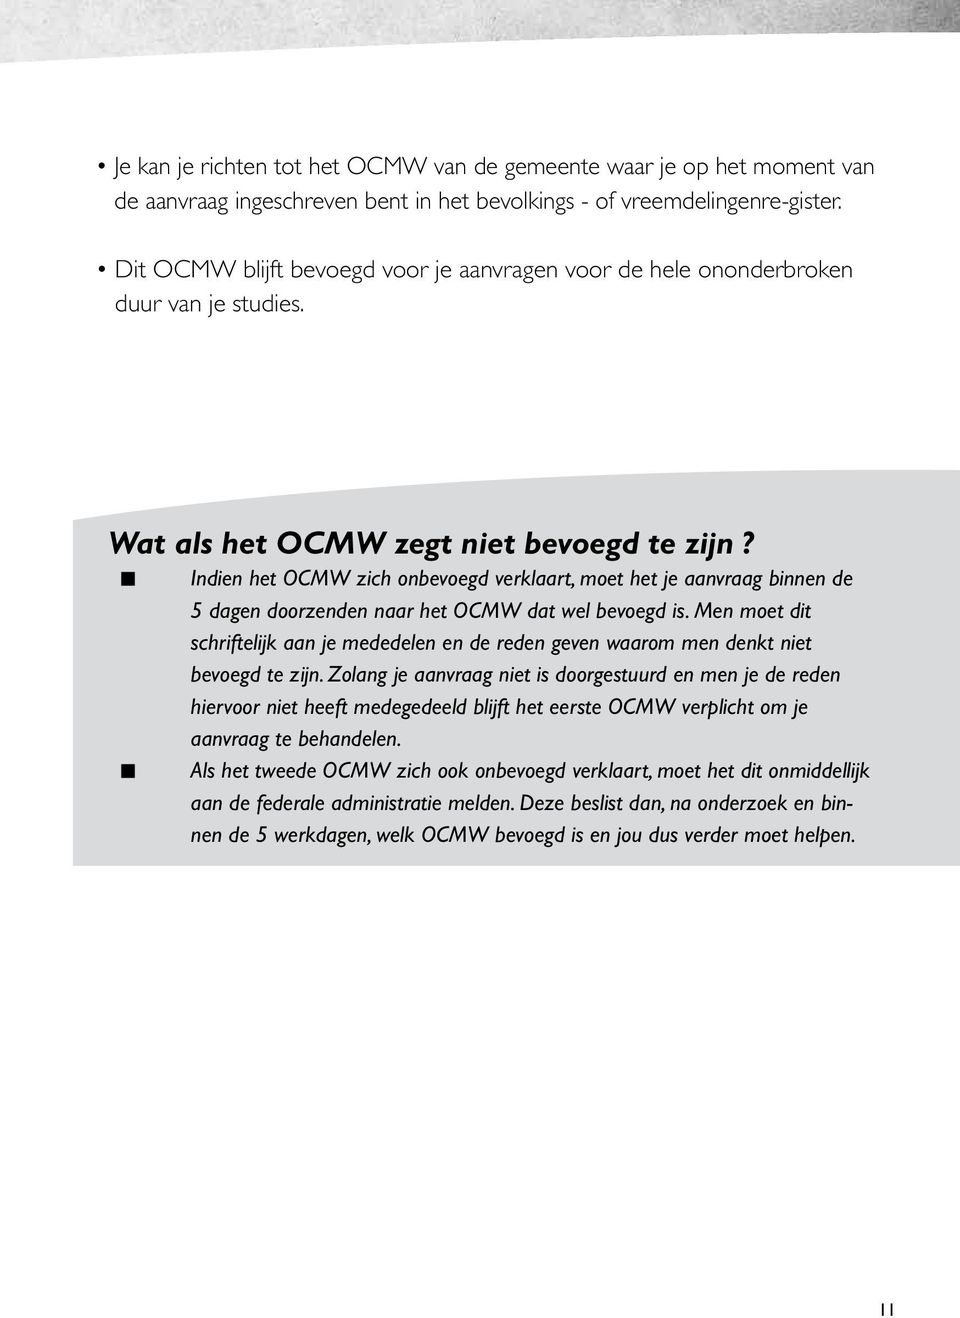 Indien het OCMW zich onbevoegd verklaart, moet het je aanvraag binnen de 5 dagen doorzenden naar het OCMW dat wel bevoegd is.